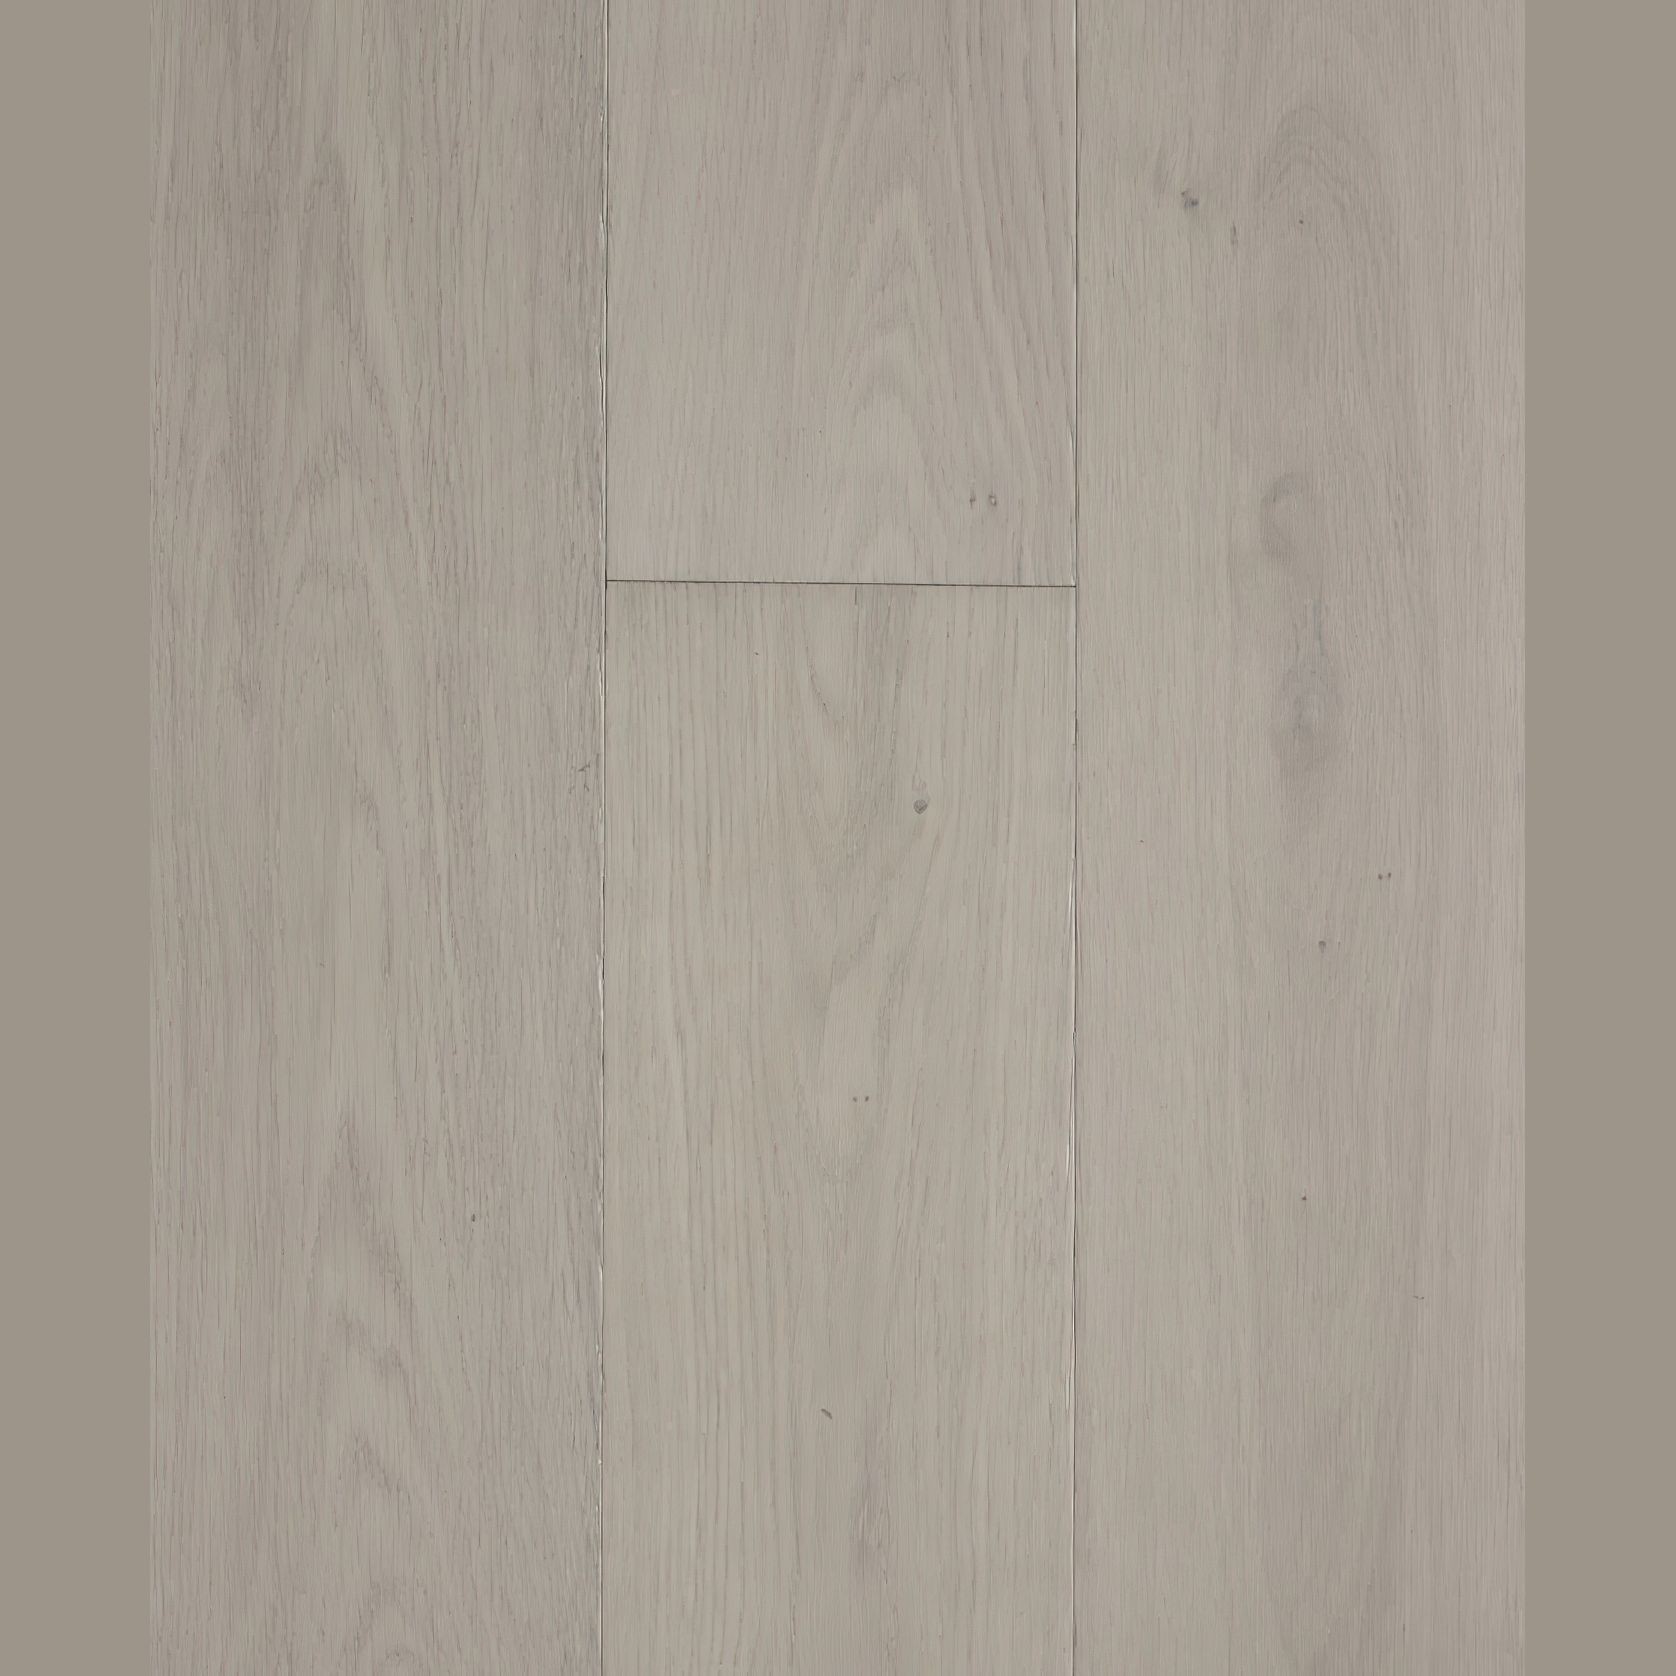 Loft Astoria Feature European Oak Flooring gallery detail image